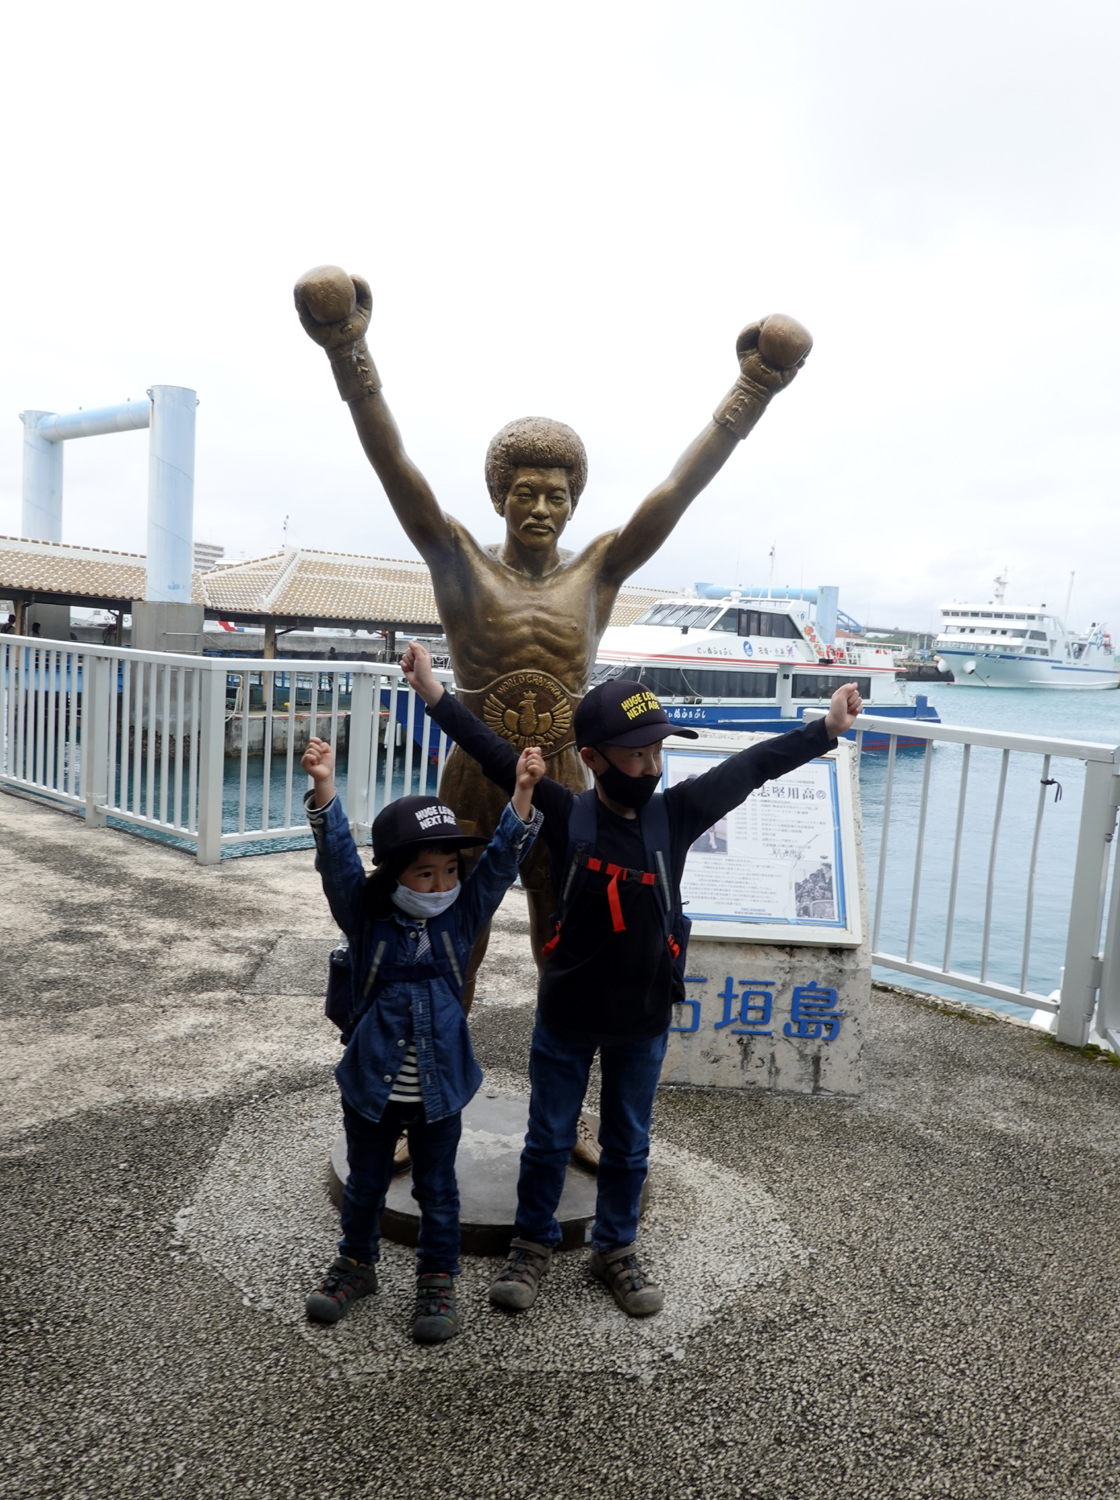 石垣島が生んだヒーロー、元世界Jフライ級チャンピオン具志堅用高さんの像